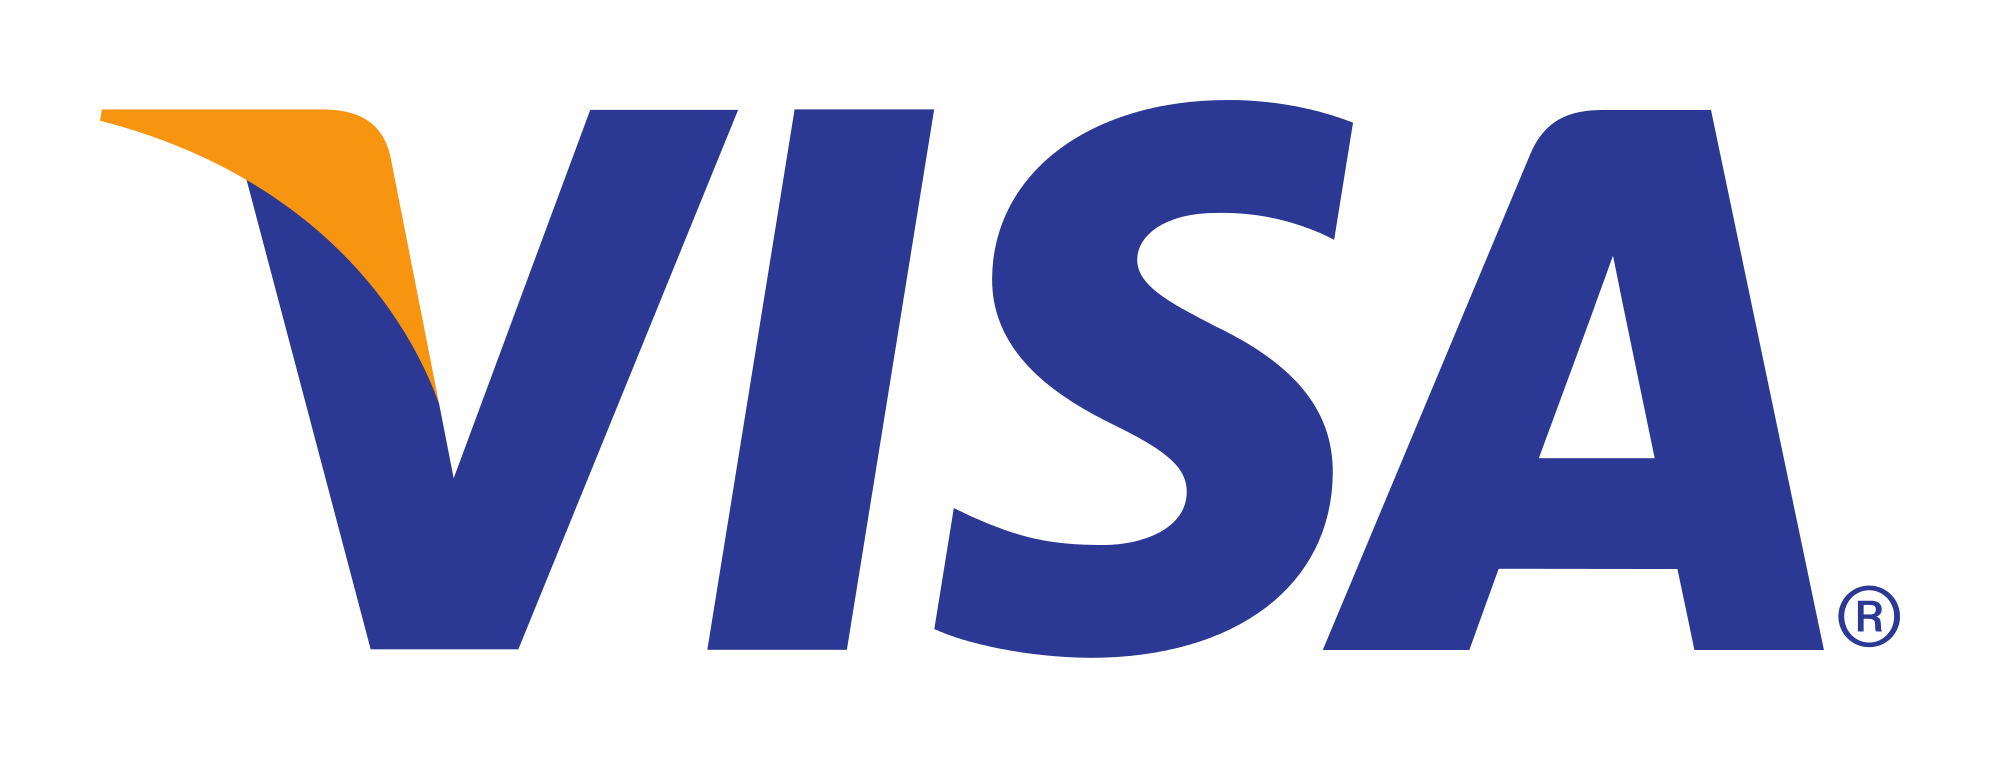 Виза платежная система логотип